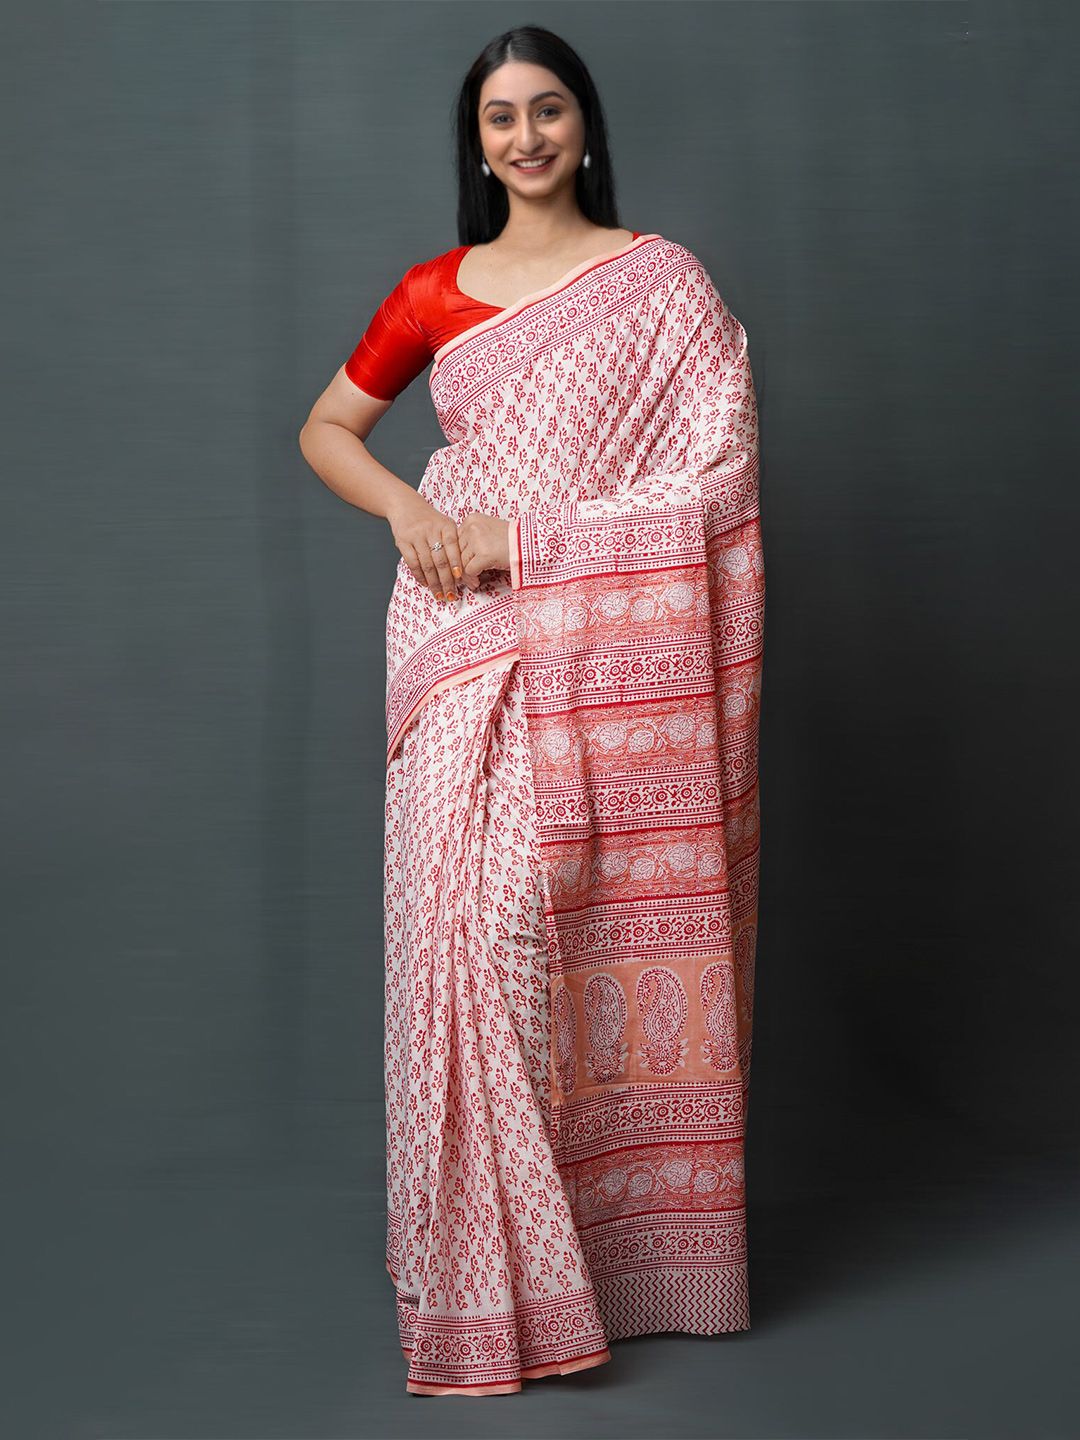 Unnati Silks White & Red Ethnic Motifs Pure Cotton Block Print Saree Price in India